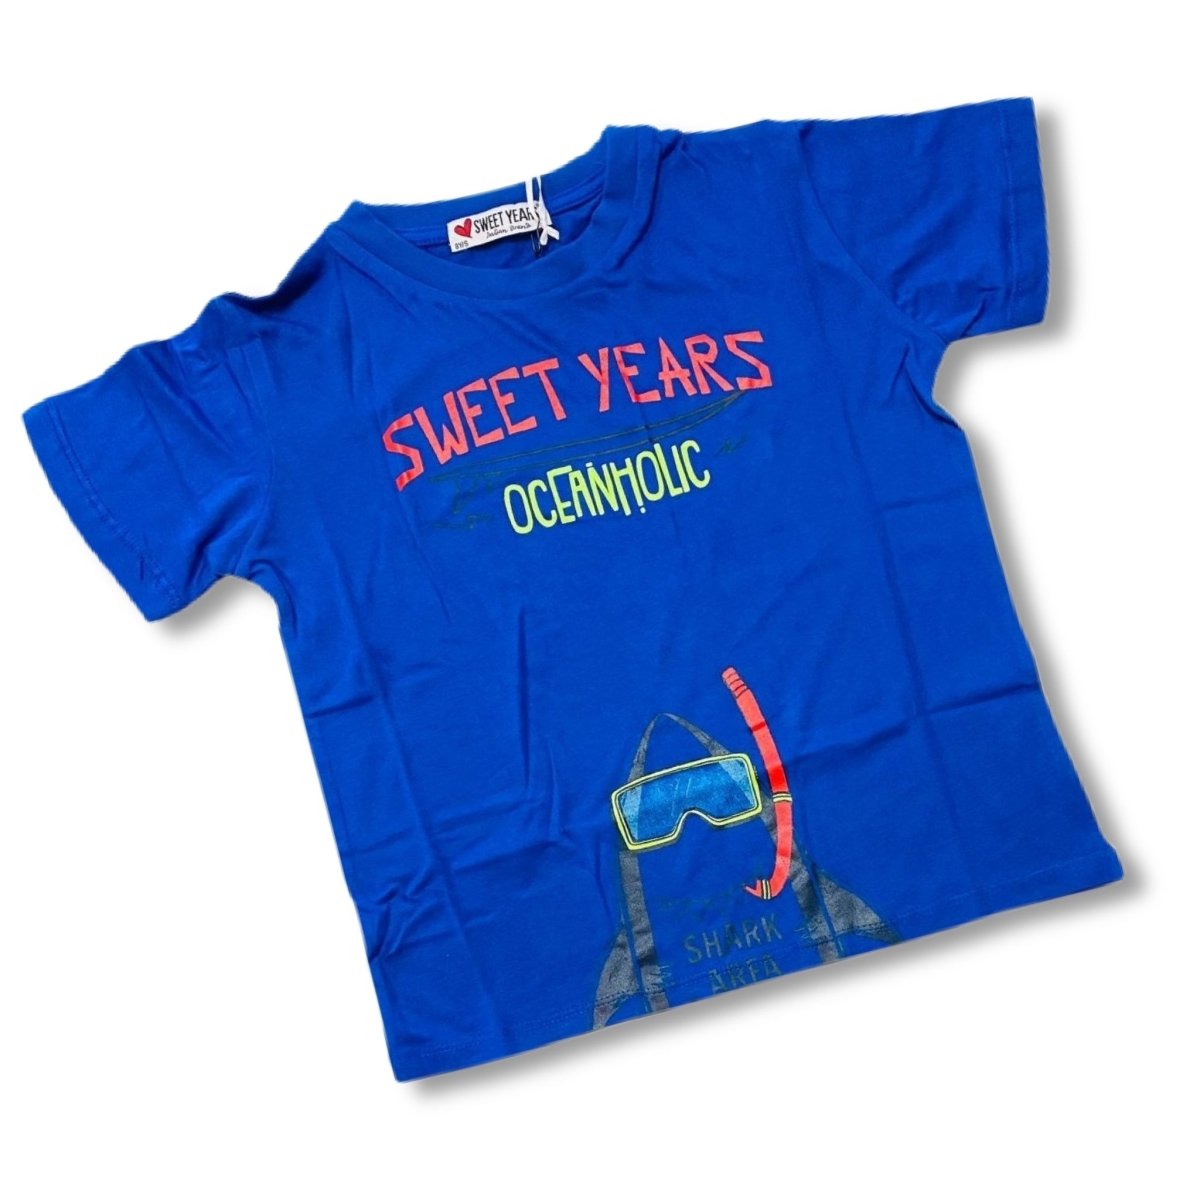 T-shirt Sweet Years 8/16 anni Bimbo - Mstore016 - T-shirt Sweet Years - Sweet Years